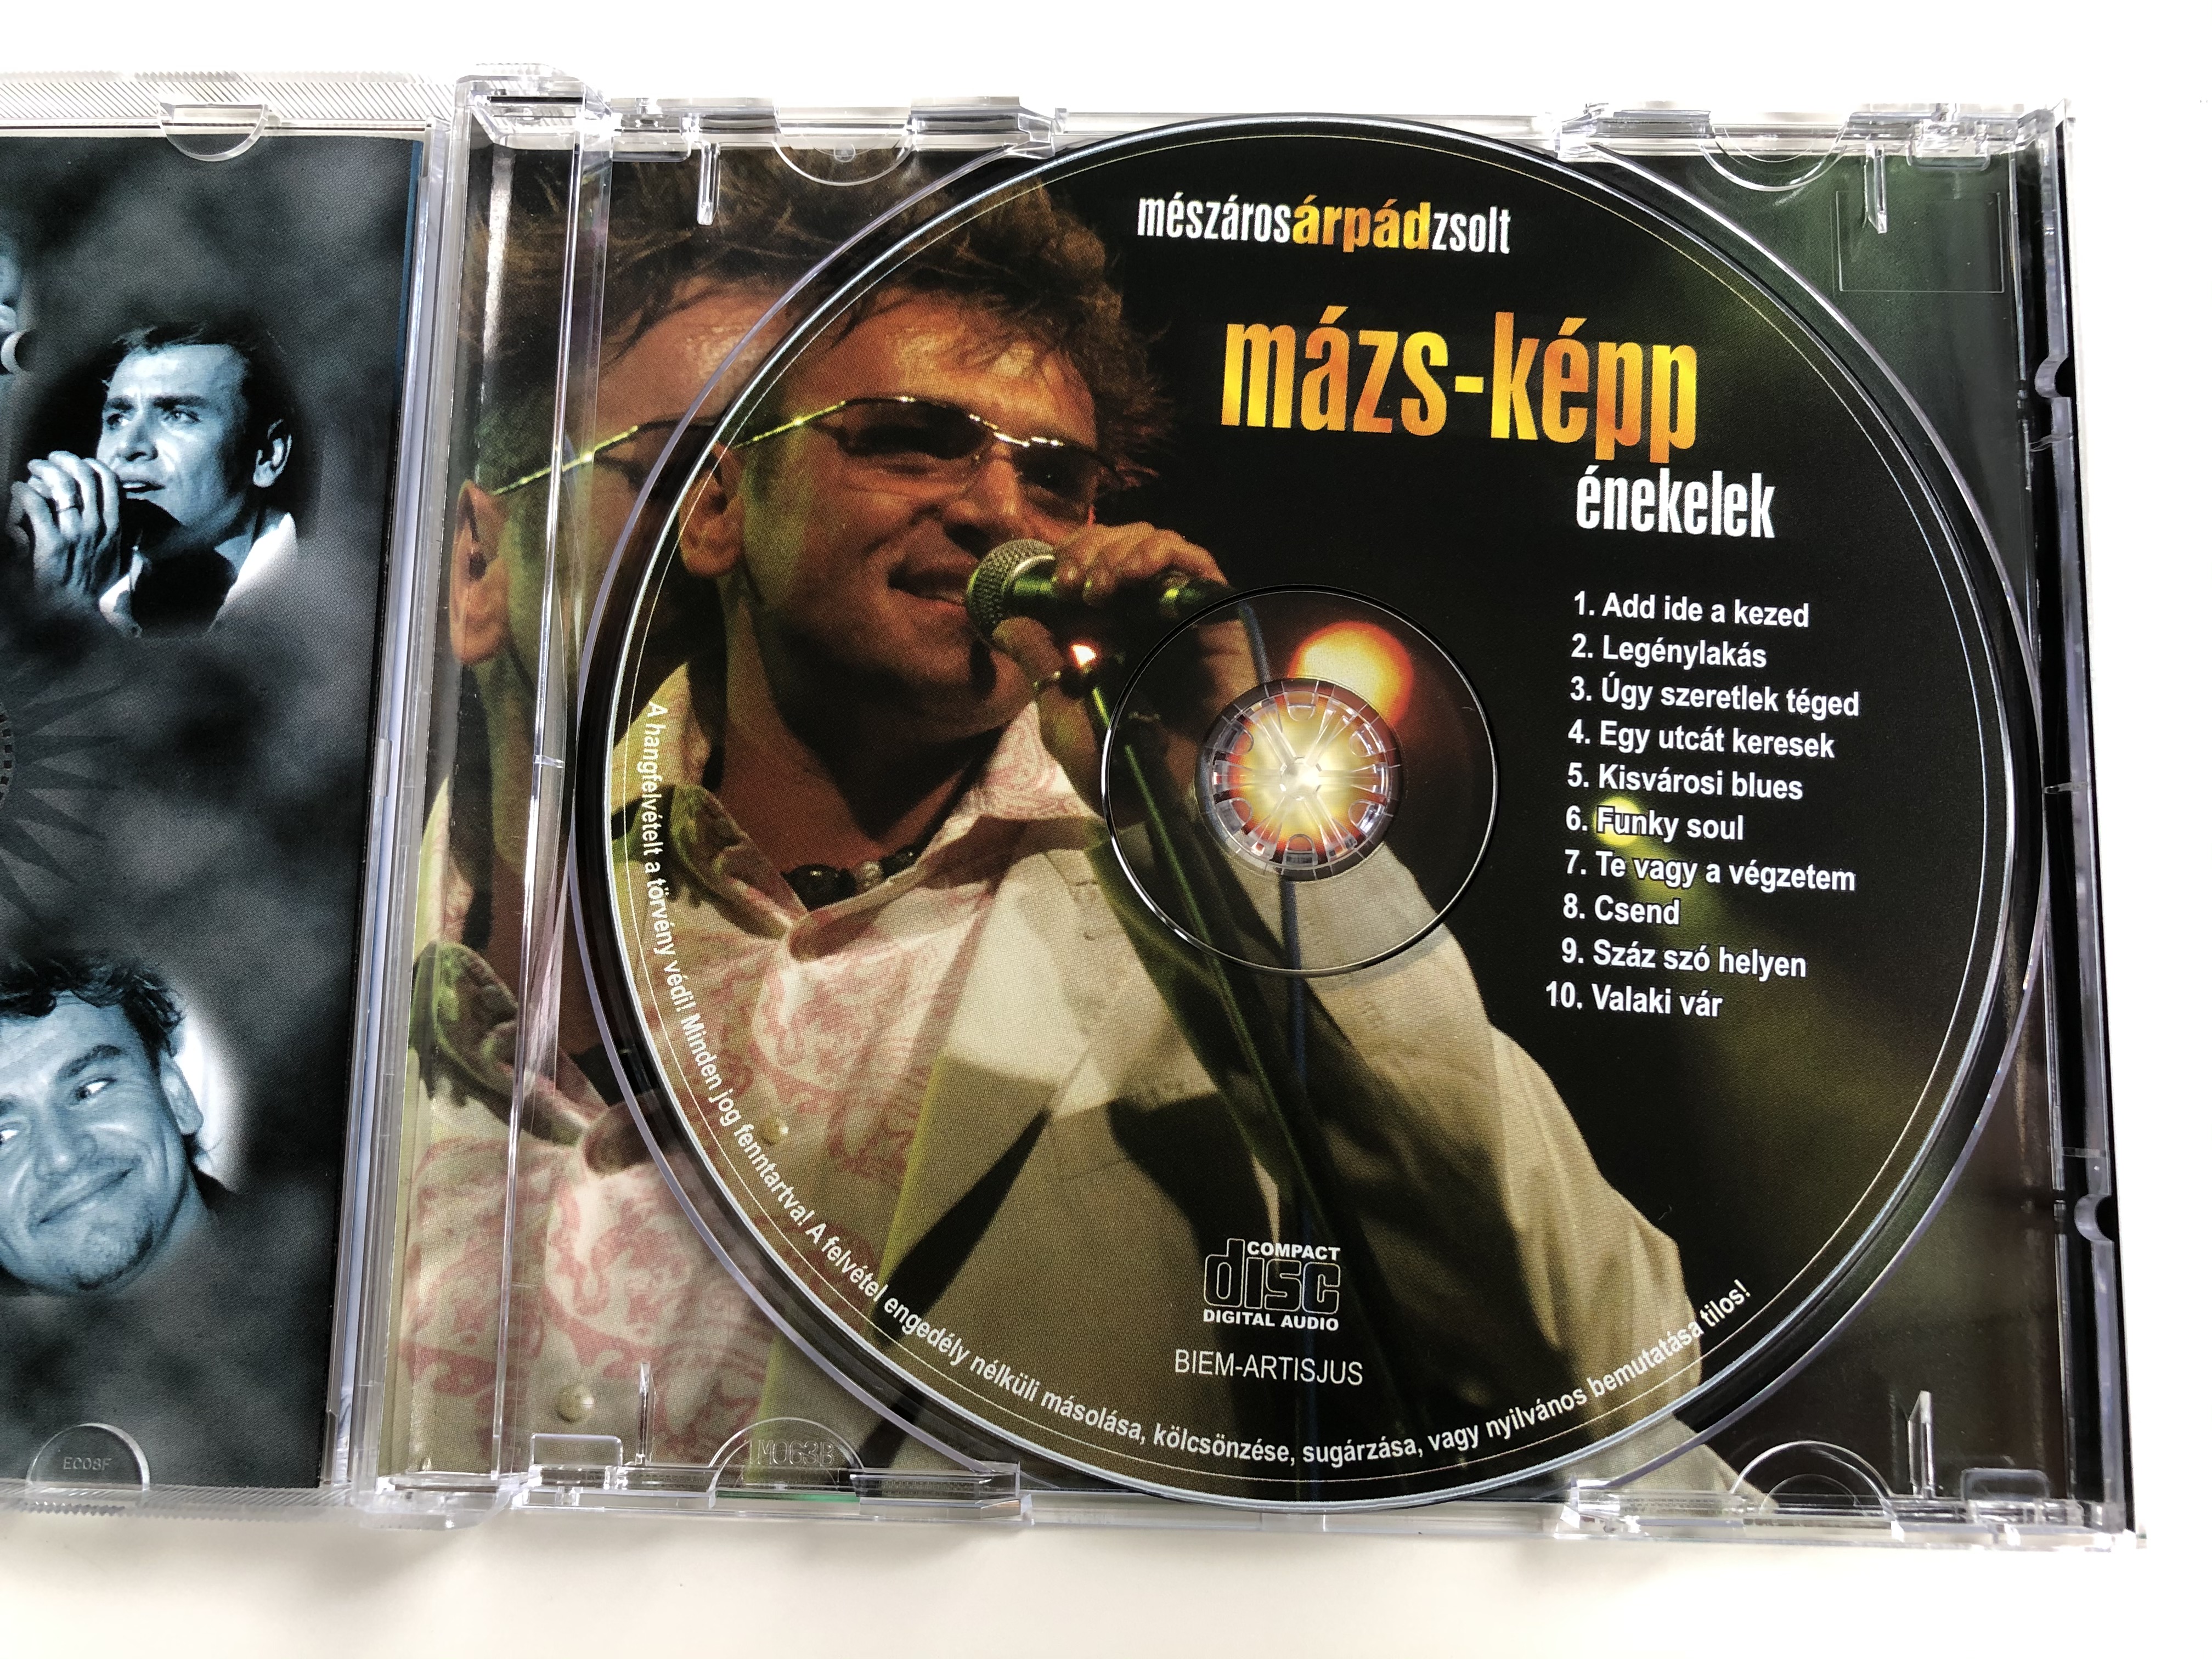 Mészáros Árpád Zsolt ‎– Mázs-képp Énekelek / Audio CD 2006 / MZS-001 /  Hungarian Pop Music - bibleinmylanguage